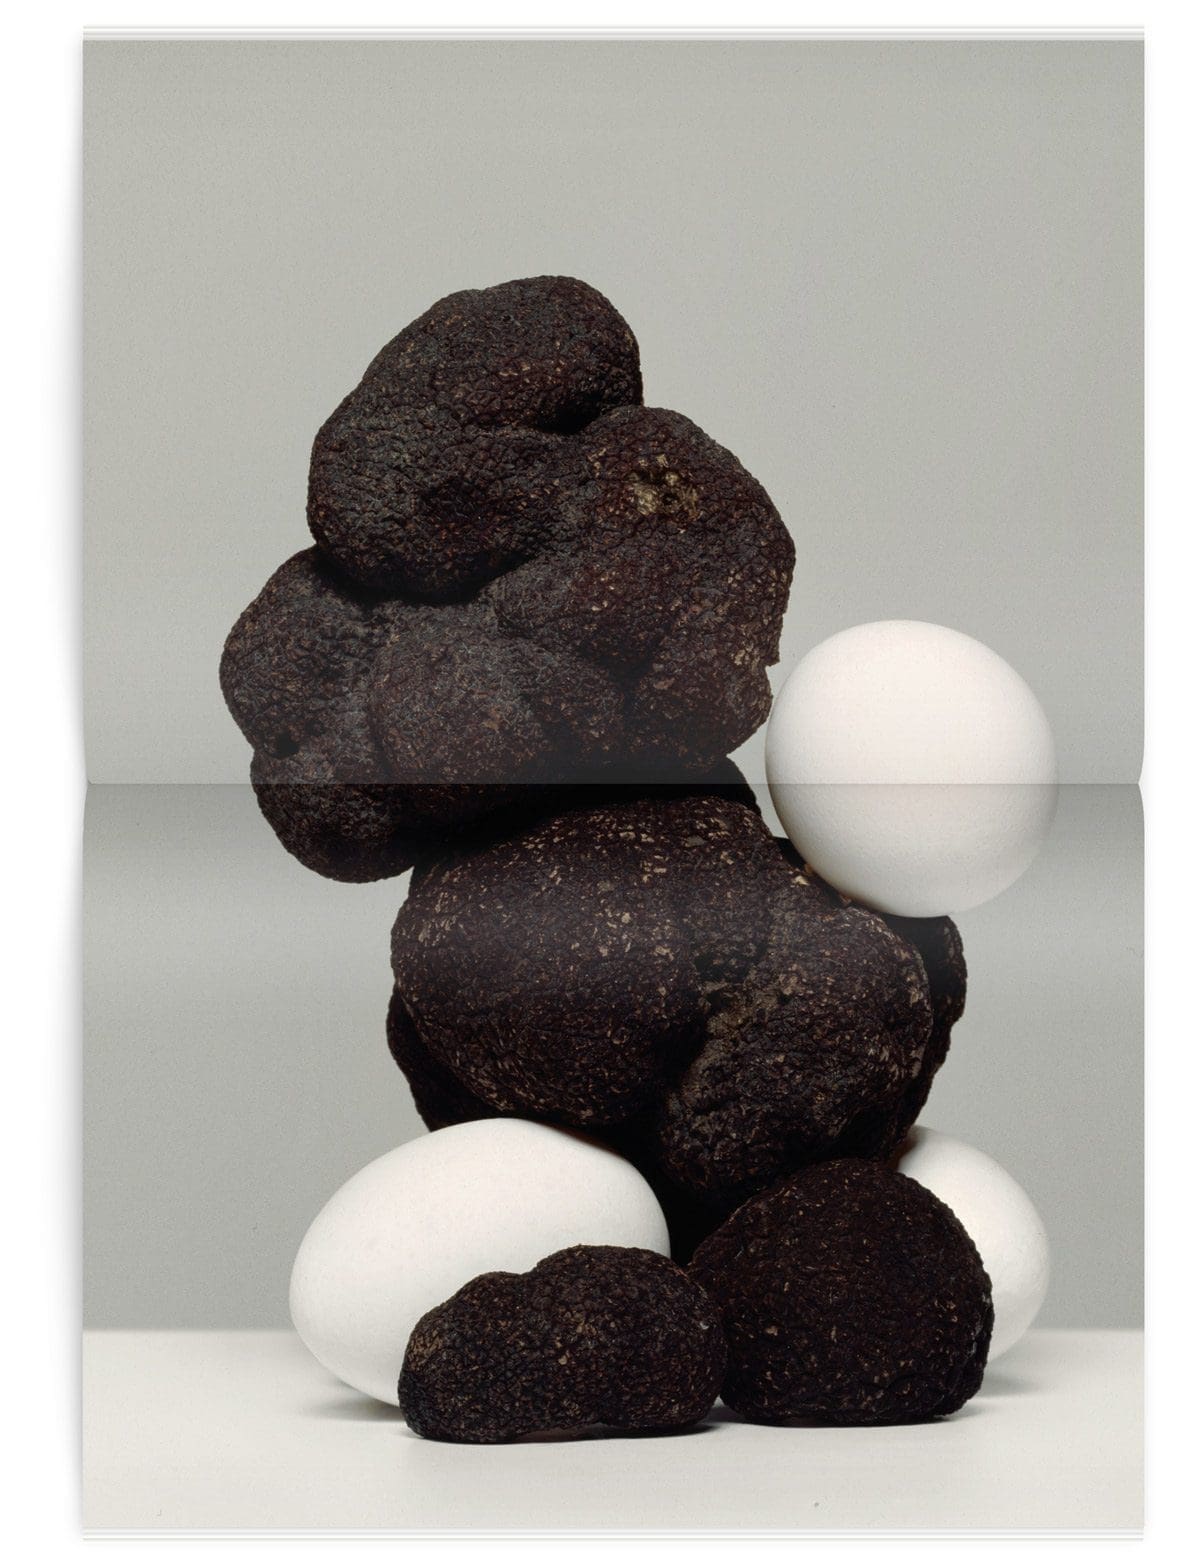 Photographie d'oeuf aux truffes dans le magazine Iconofly, revue d’art autour d’un accessoire le sac de voyage, design IchetKar